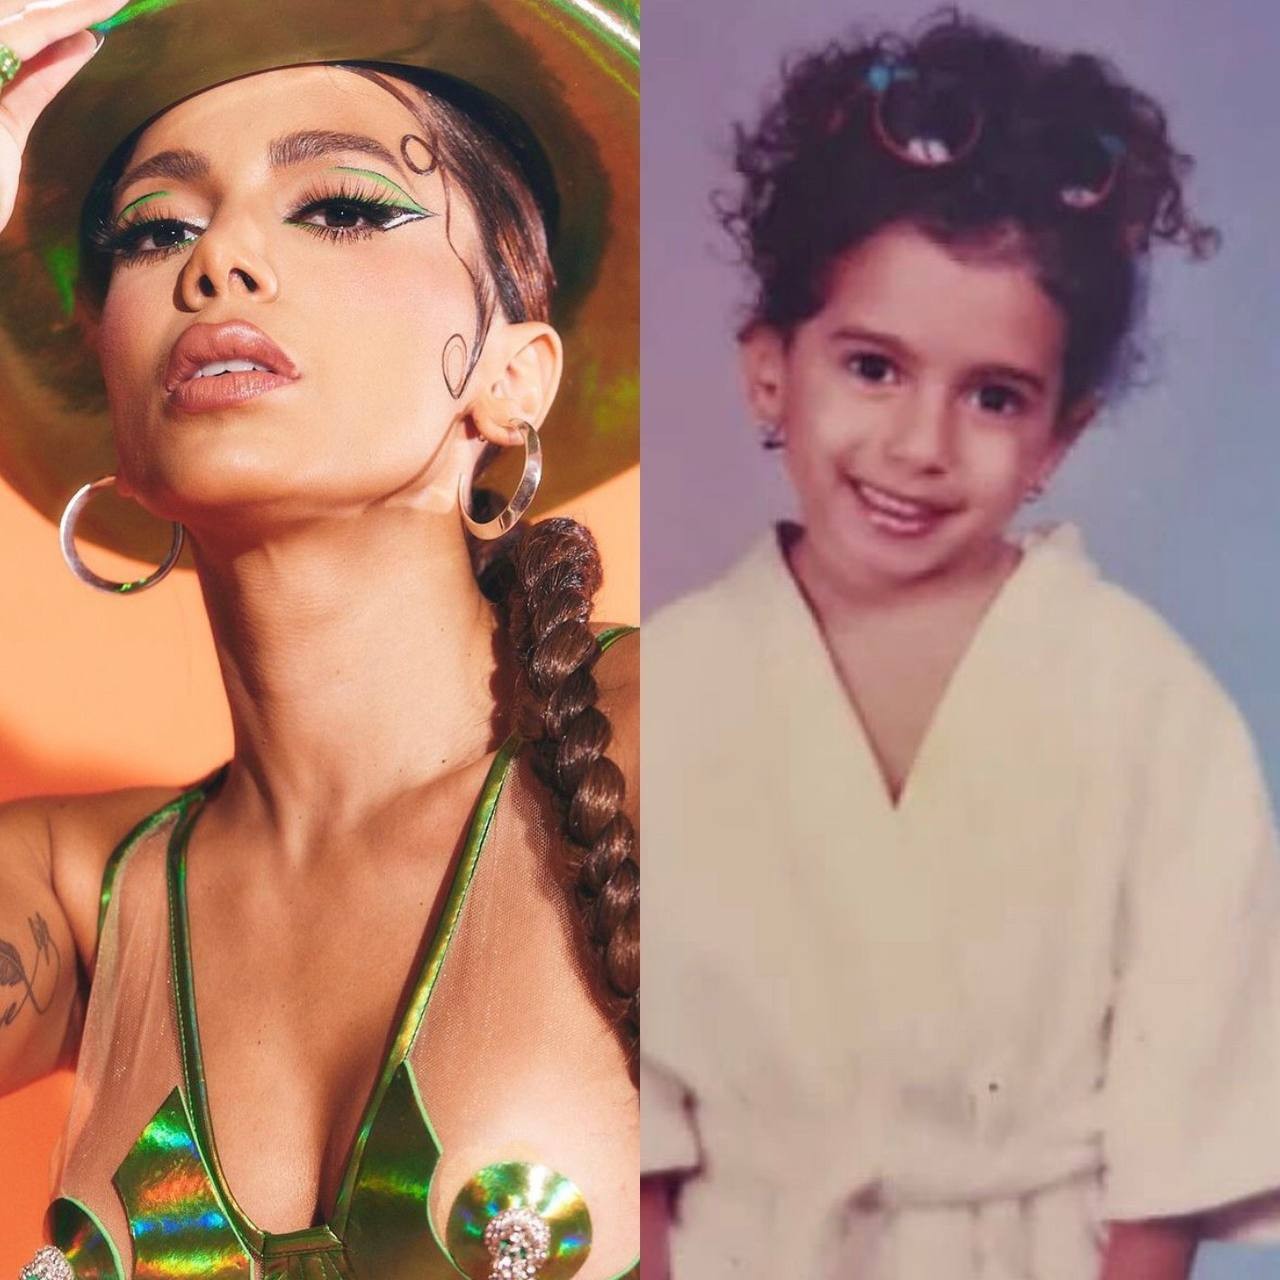 Anitta comemora 29 anos com álbum de fotos nostálgicas no Instagram: 'Minhas versões' (Foto: Reprodução / Instagram)